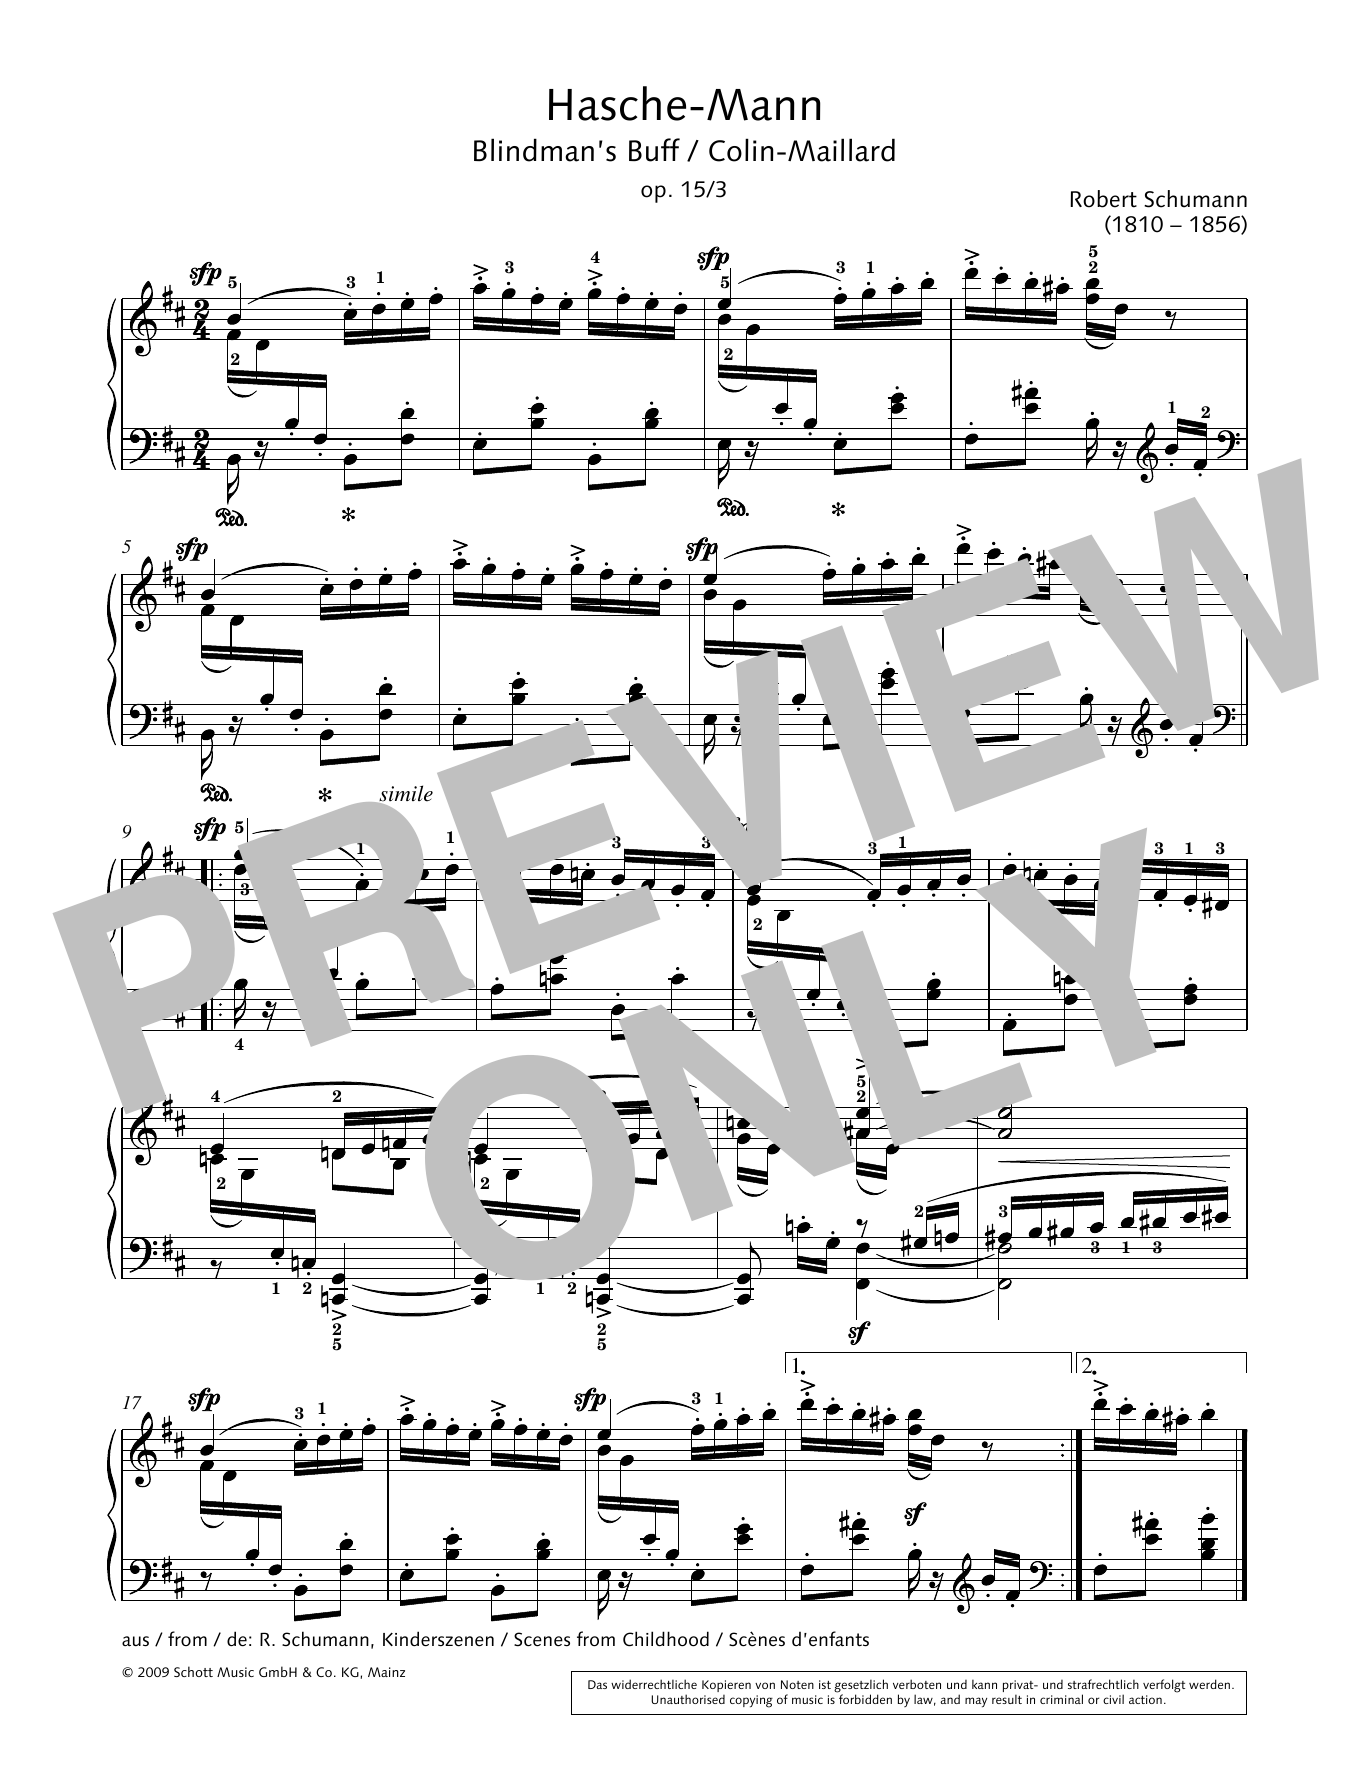 Download Robert Schumann Blindman's Buff Sheet Music